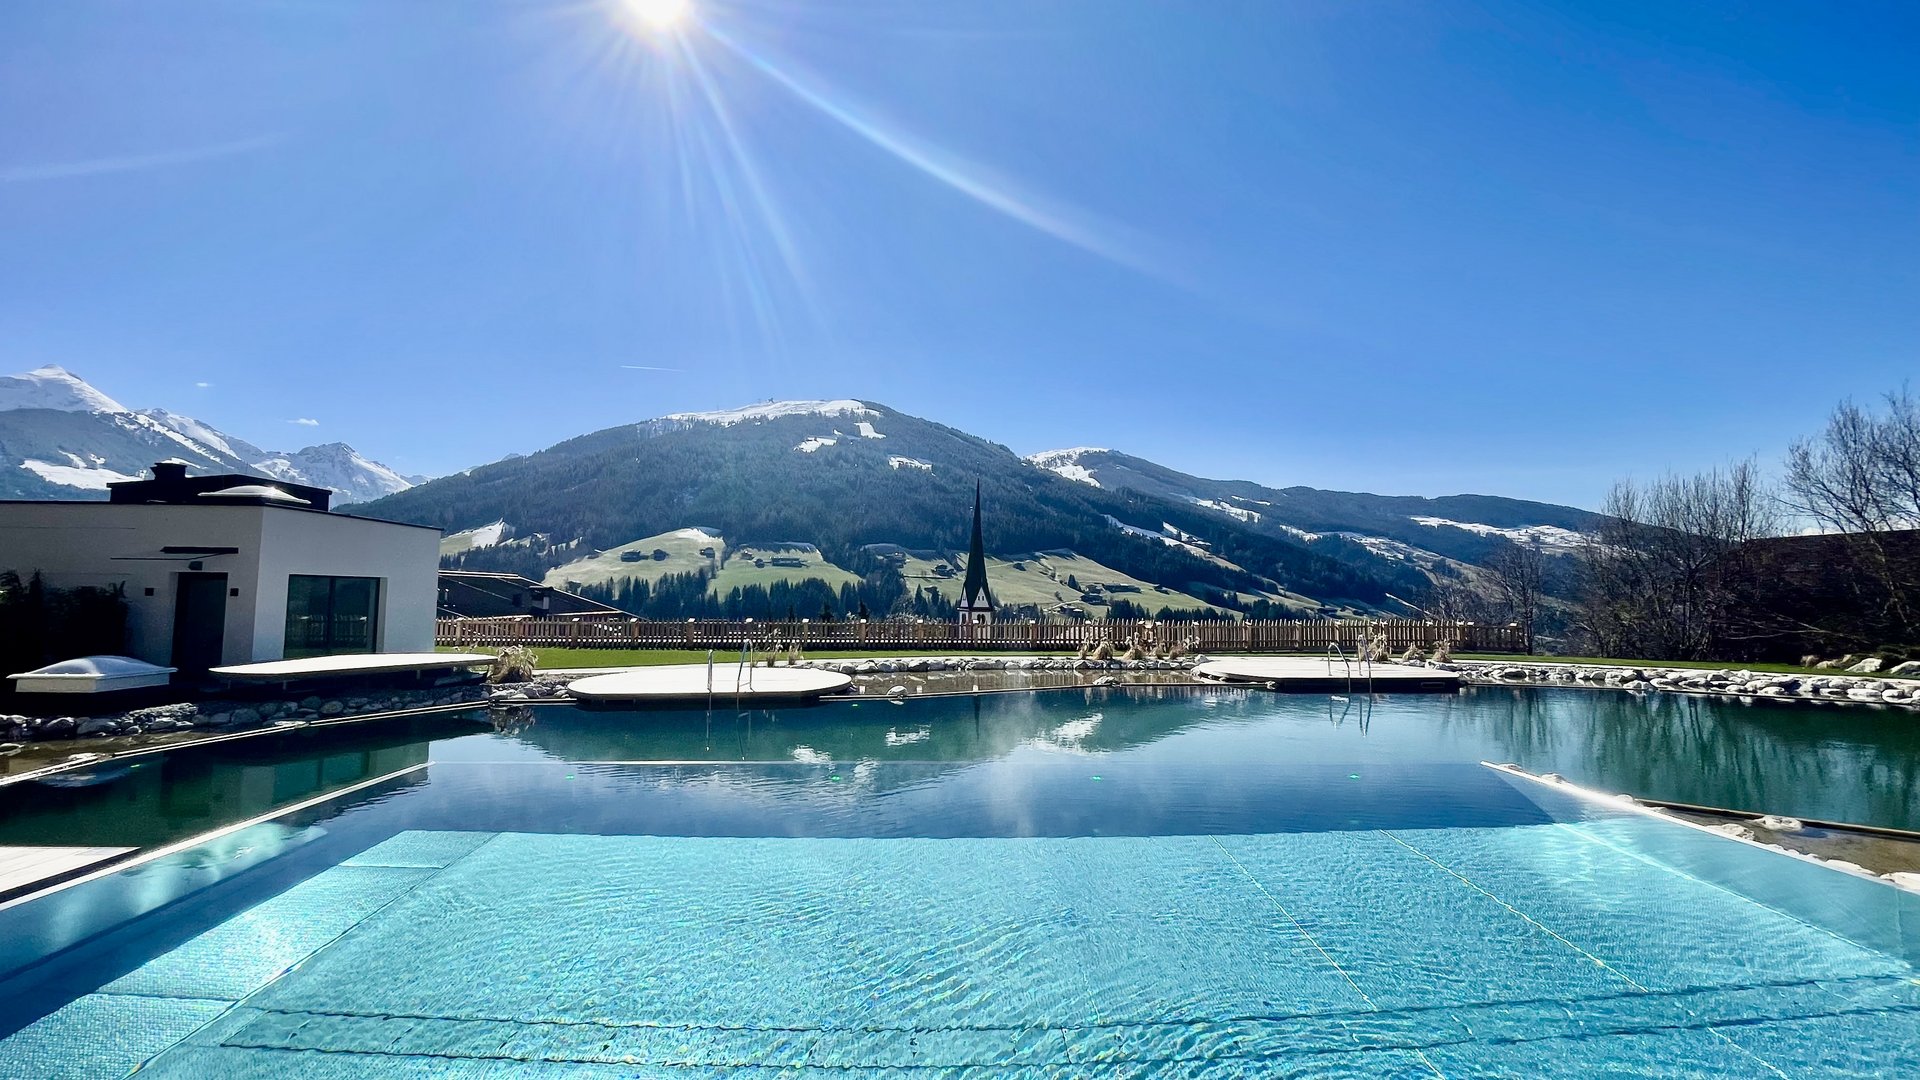 Wellnesshotel in Tirol für adults-only gesucht?